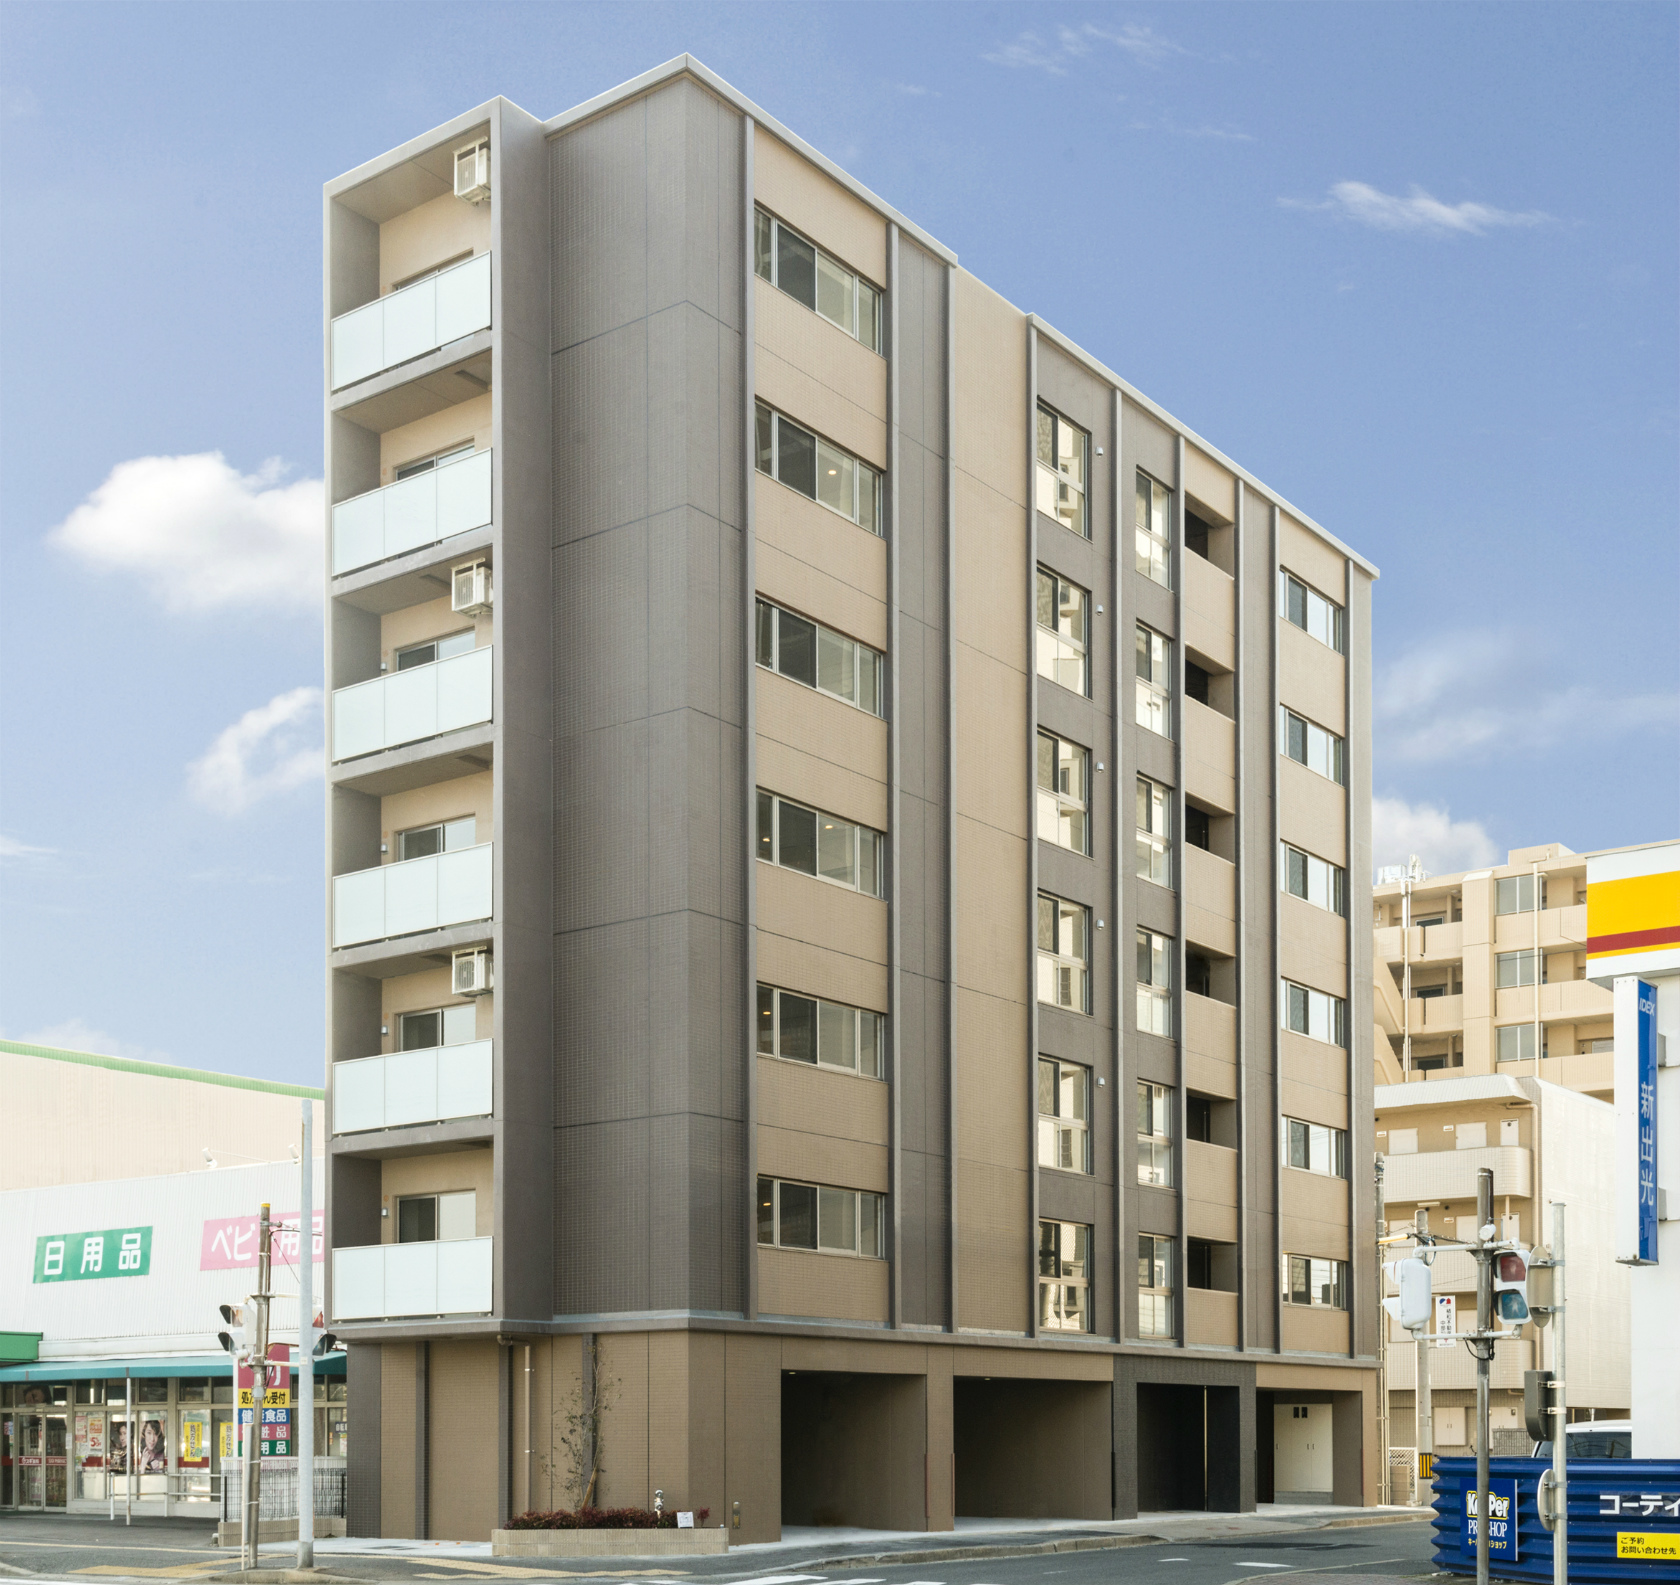 名古屋市中川区の賃貸マンションのブラウンの落ち着いた色合いの外観デザイン